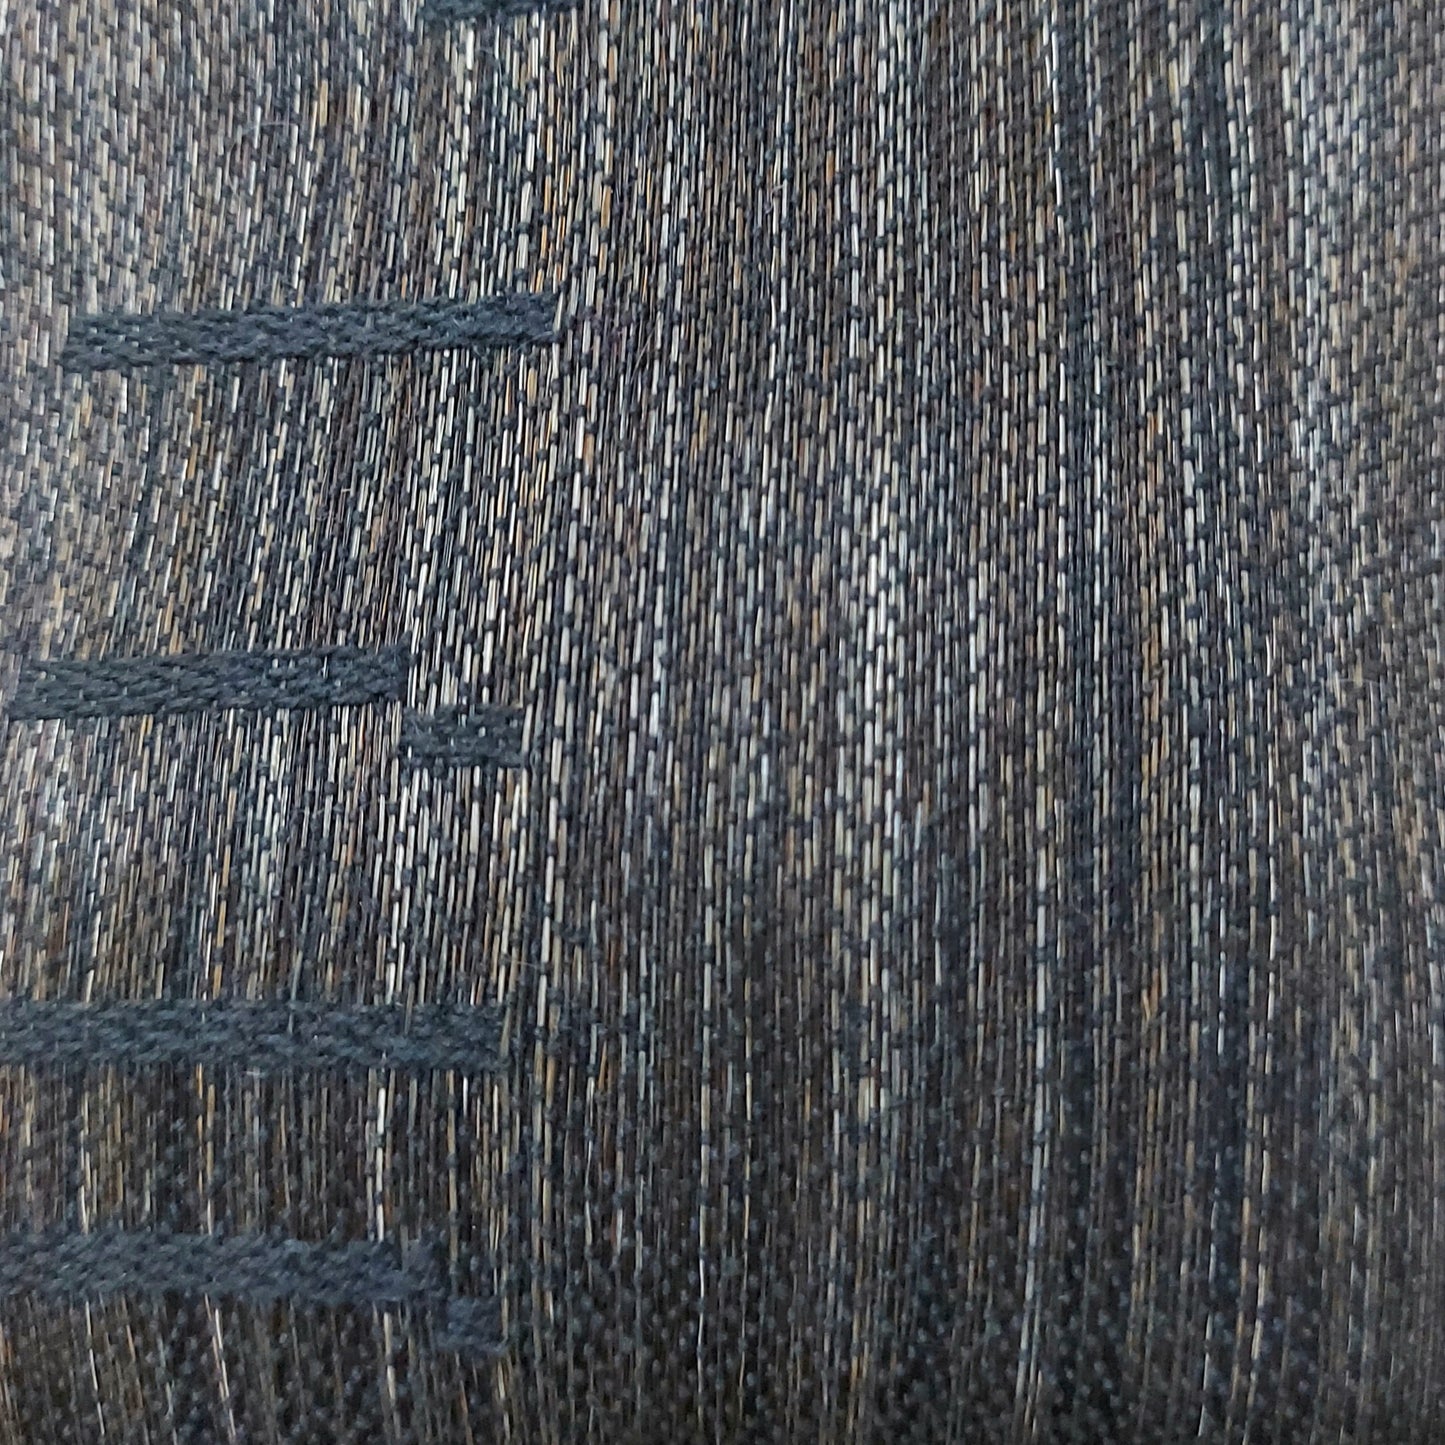 Finland, Waveweaver's Wool / Hannele Köngäs, Brown damask bag of horse hair